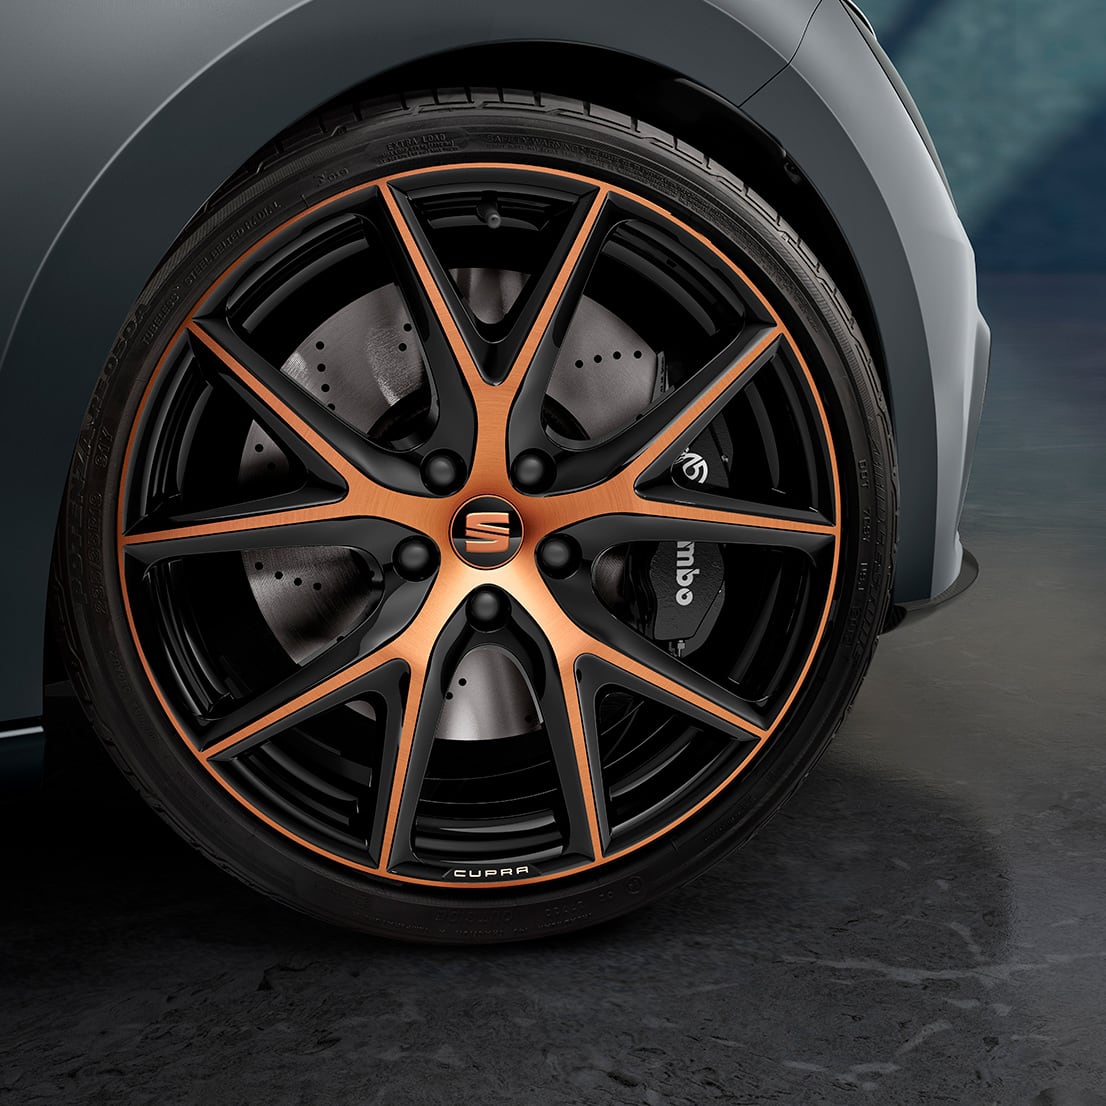 leon-cupra-carbon-edition-copper-wheels-with-brembo-break-system